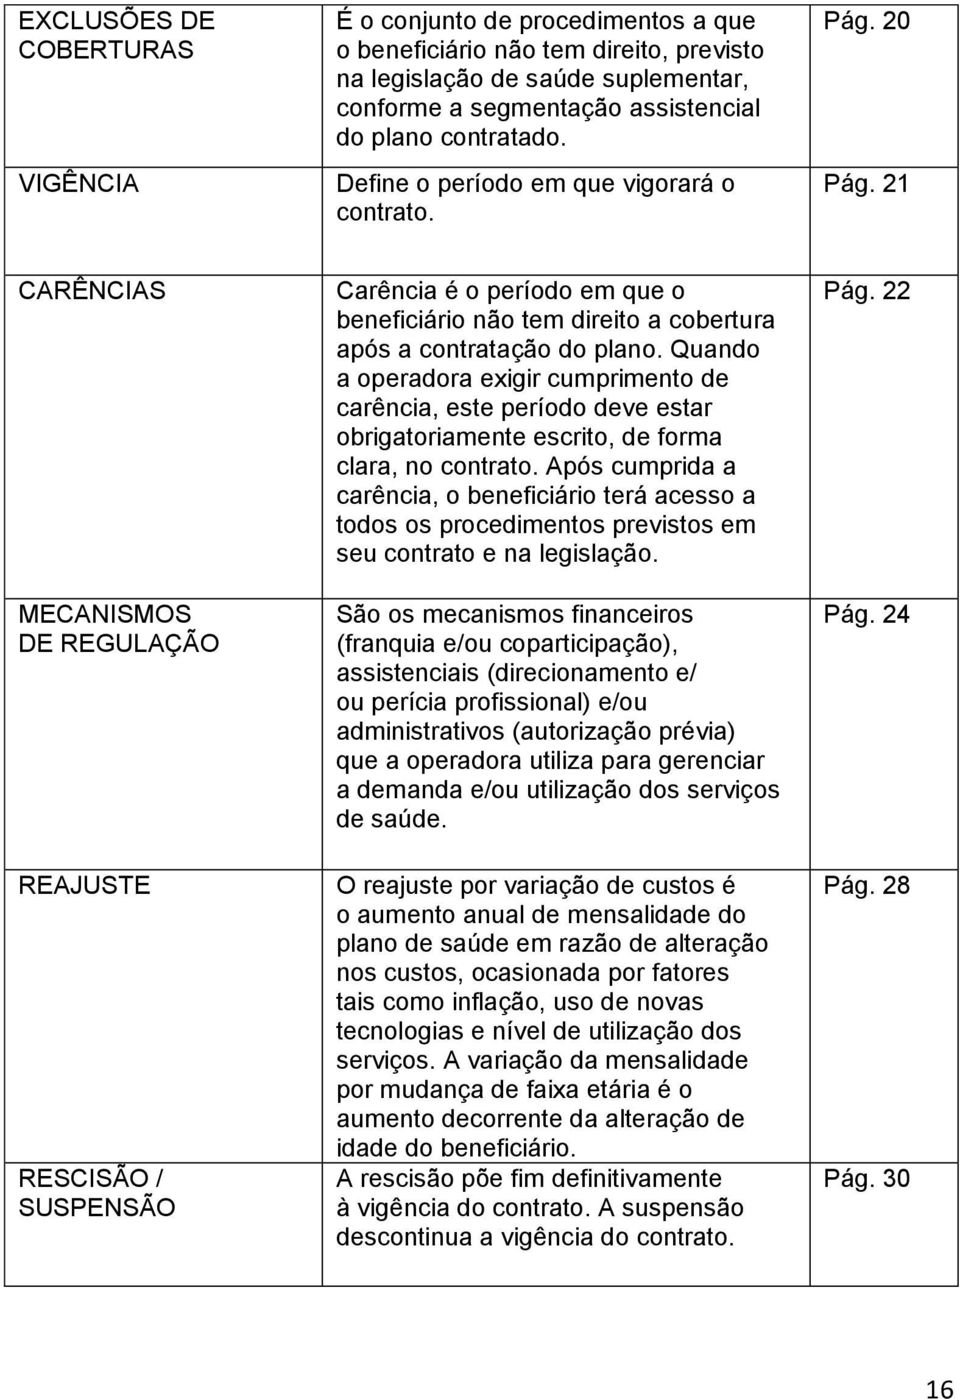 21 CARÊNCIAS MECANISMOS DE REGULAÇÃO REAJUSTE RESCISÃO / SUSPENSÃO Carência é o período em que o beneficiário não tem direito a cobertura após a contratação do plano.